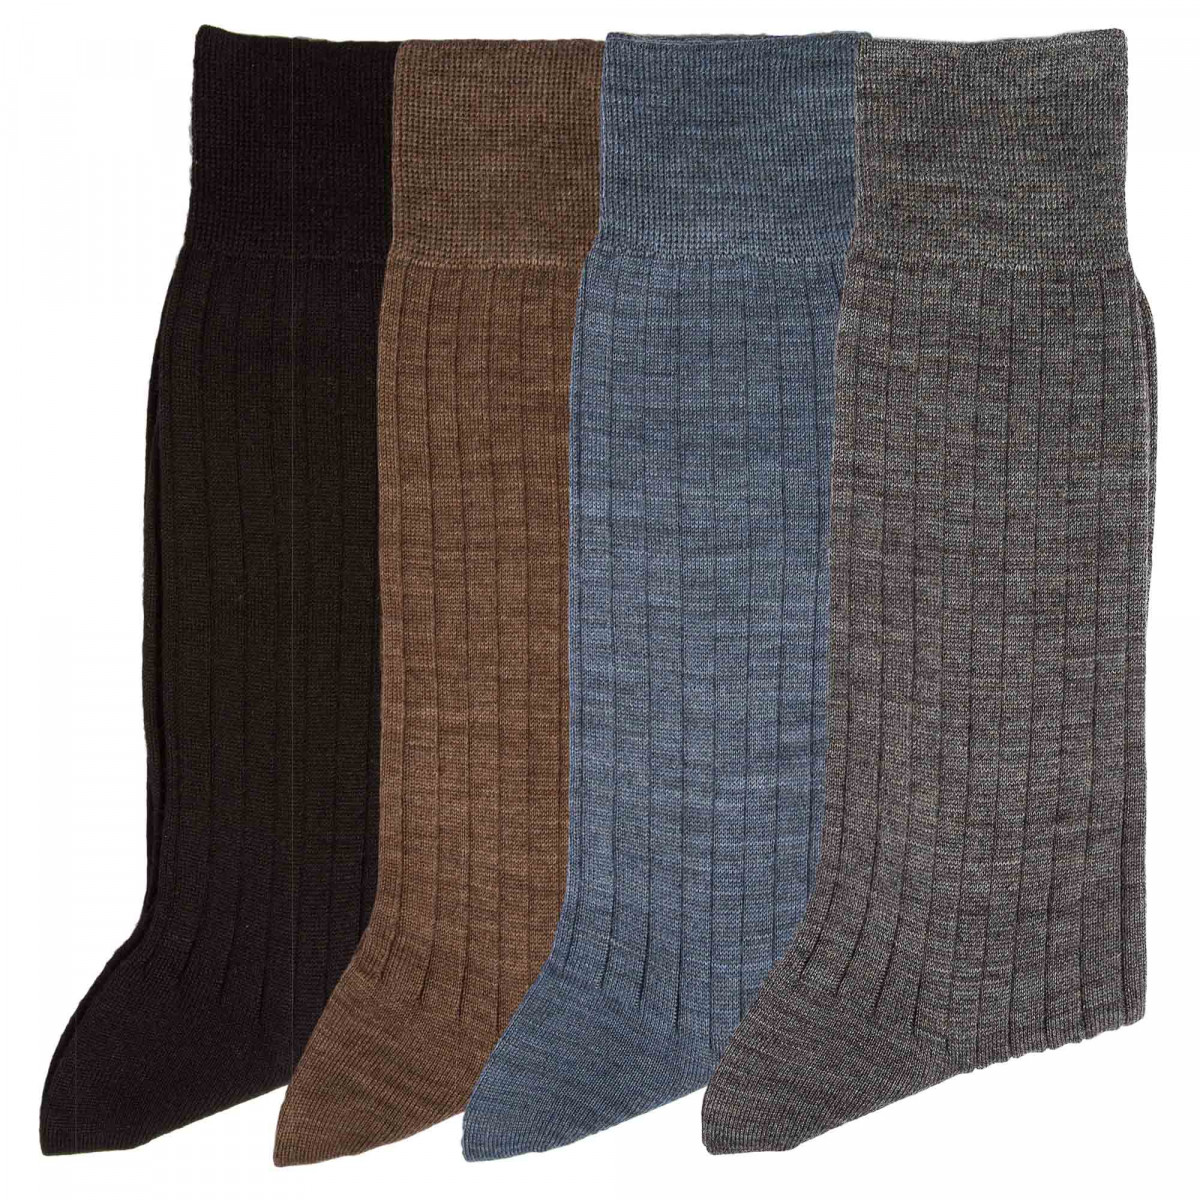 Chaussettes mérinos - les 4 paires 40/41 Multicolore